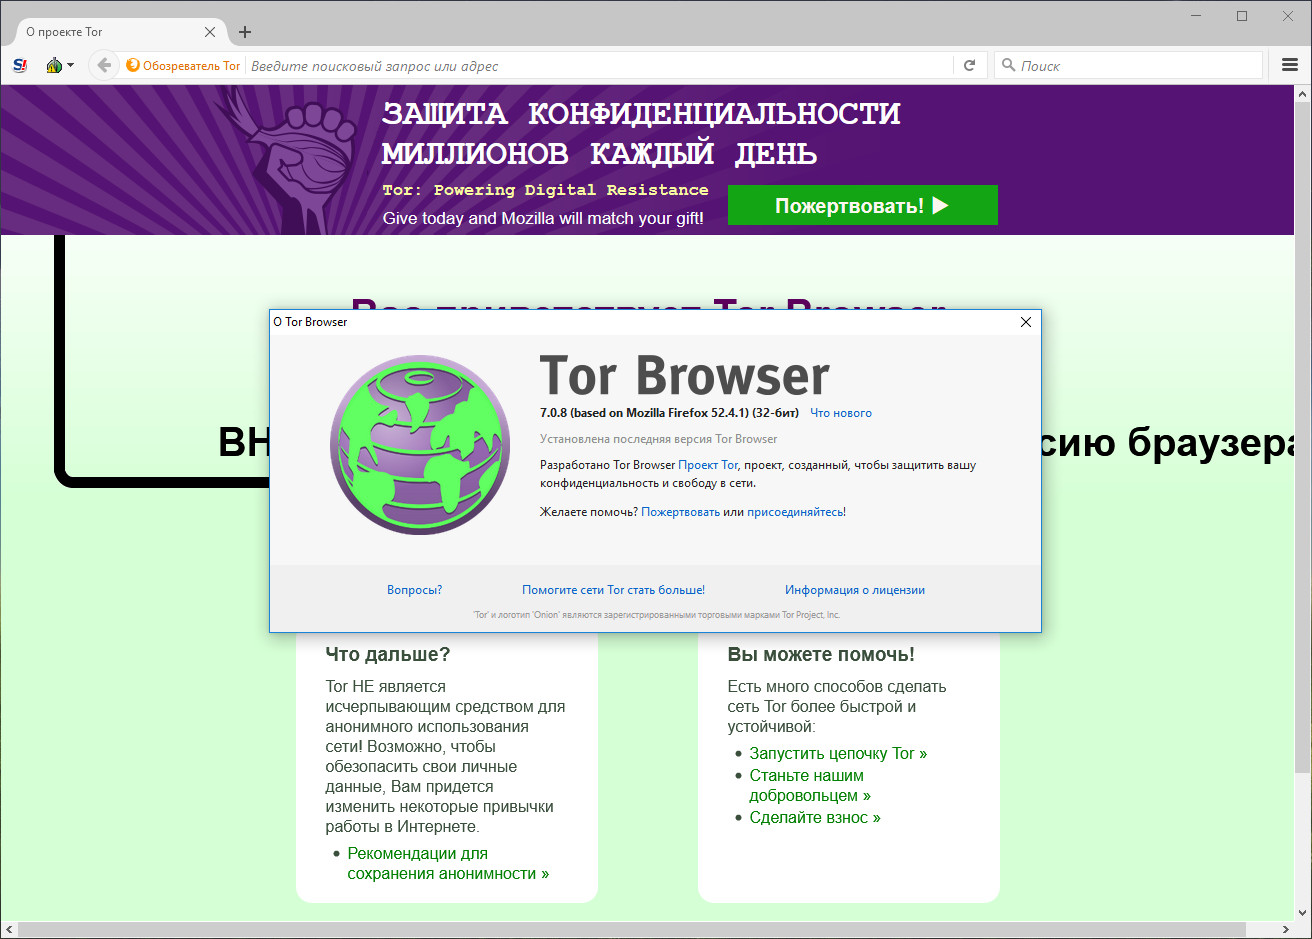 тор браузер скачать бесплатно и без регистрации на русском gydra